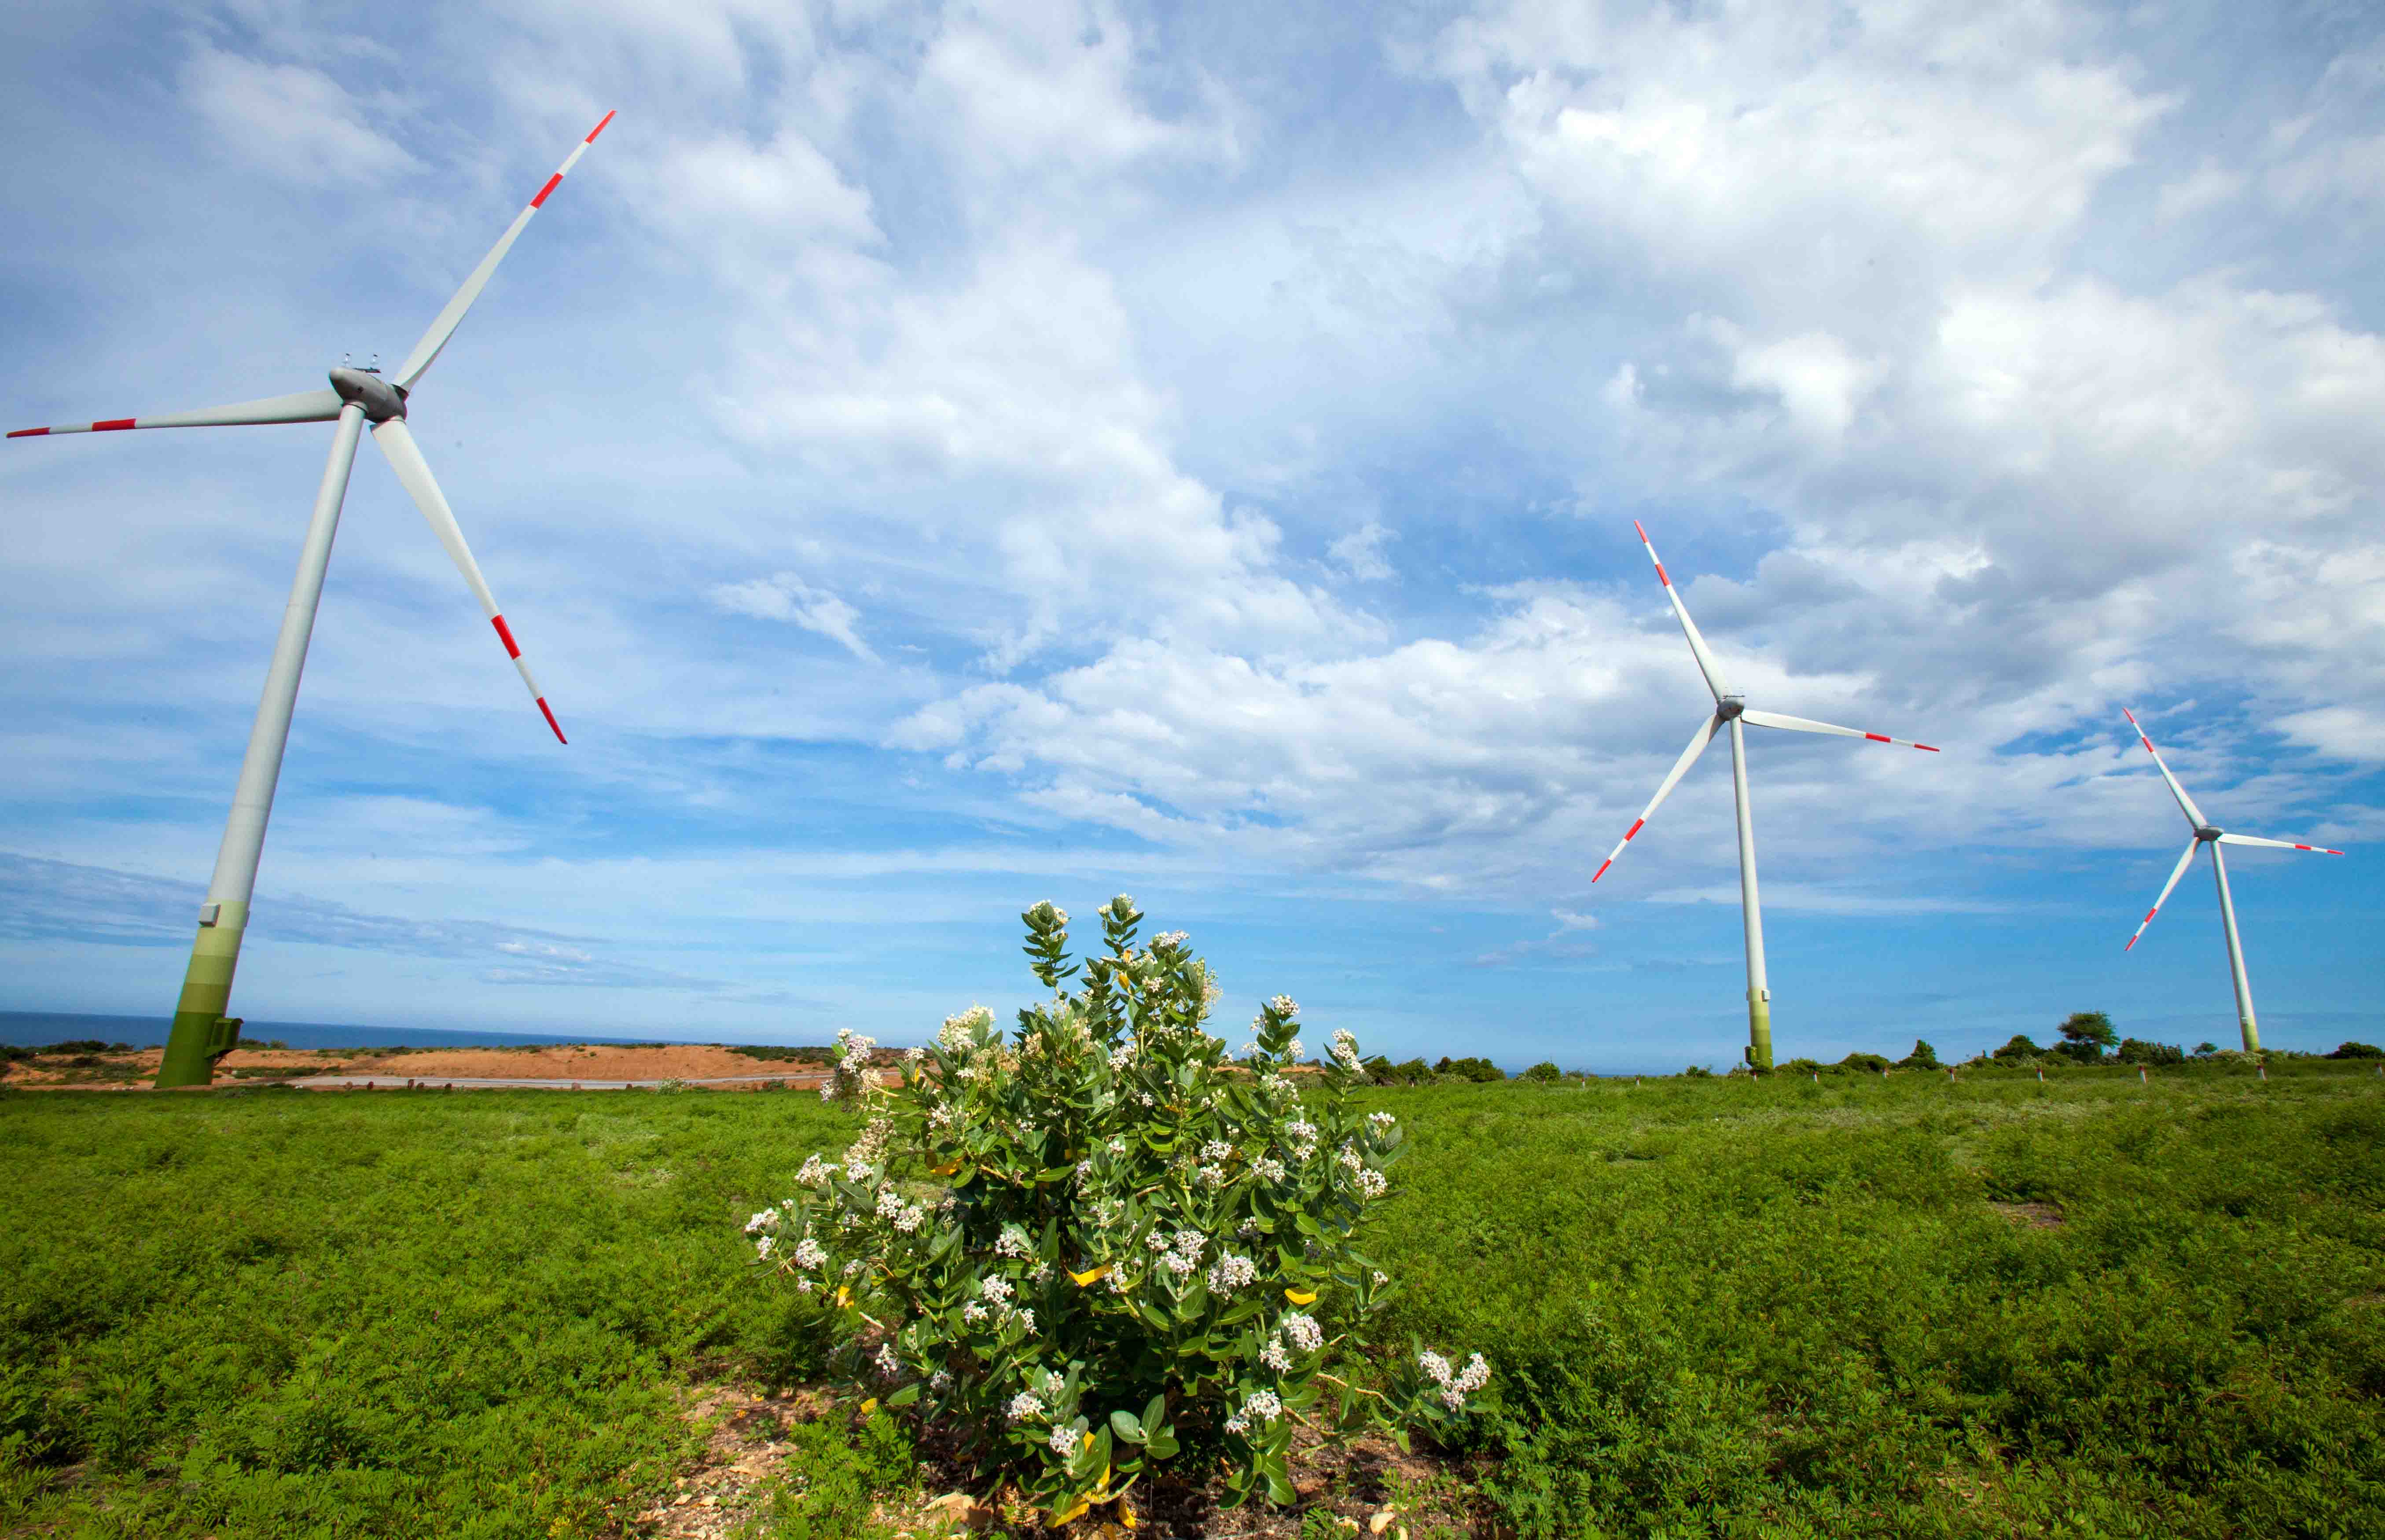 Những trụ điện gió như những cối xay gió khổng lồ đứng hiên ngang vươn mình đón gió là ấn tượng không thể quên với mỗi du khách khi đến vùng đất Ninh Thuận.